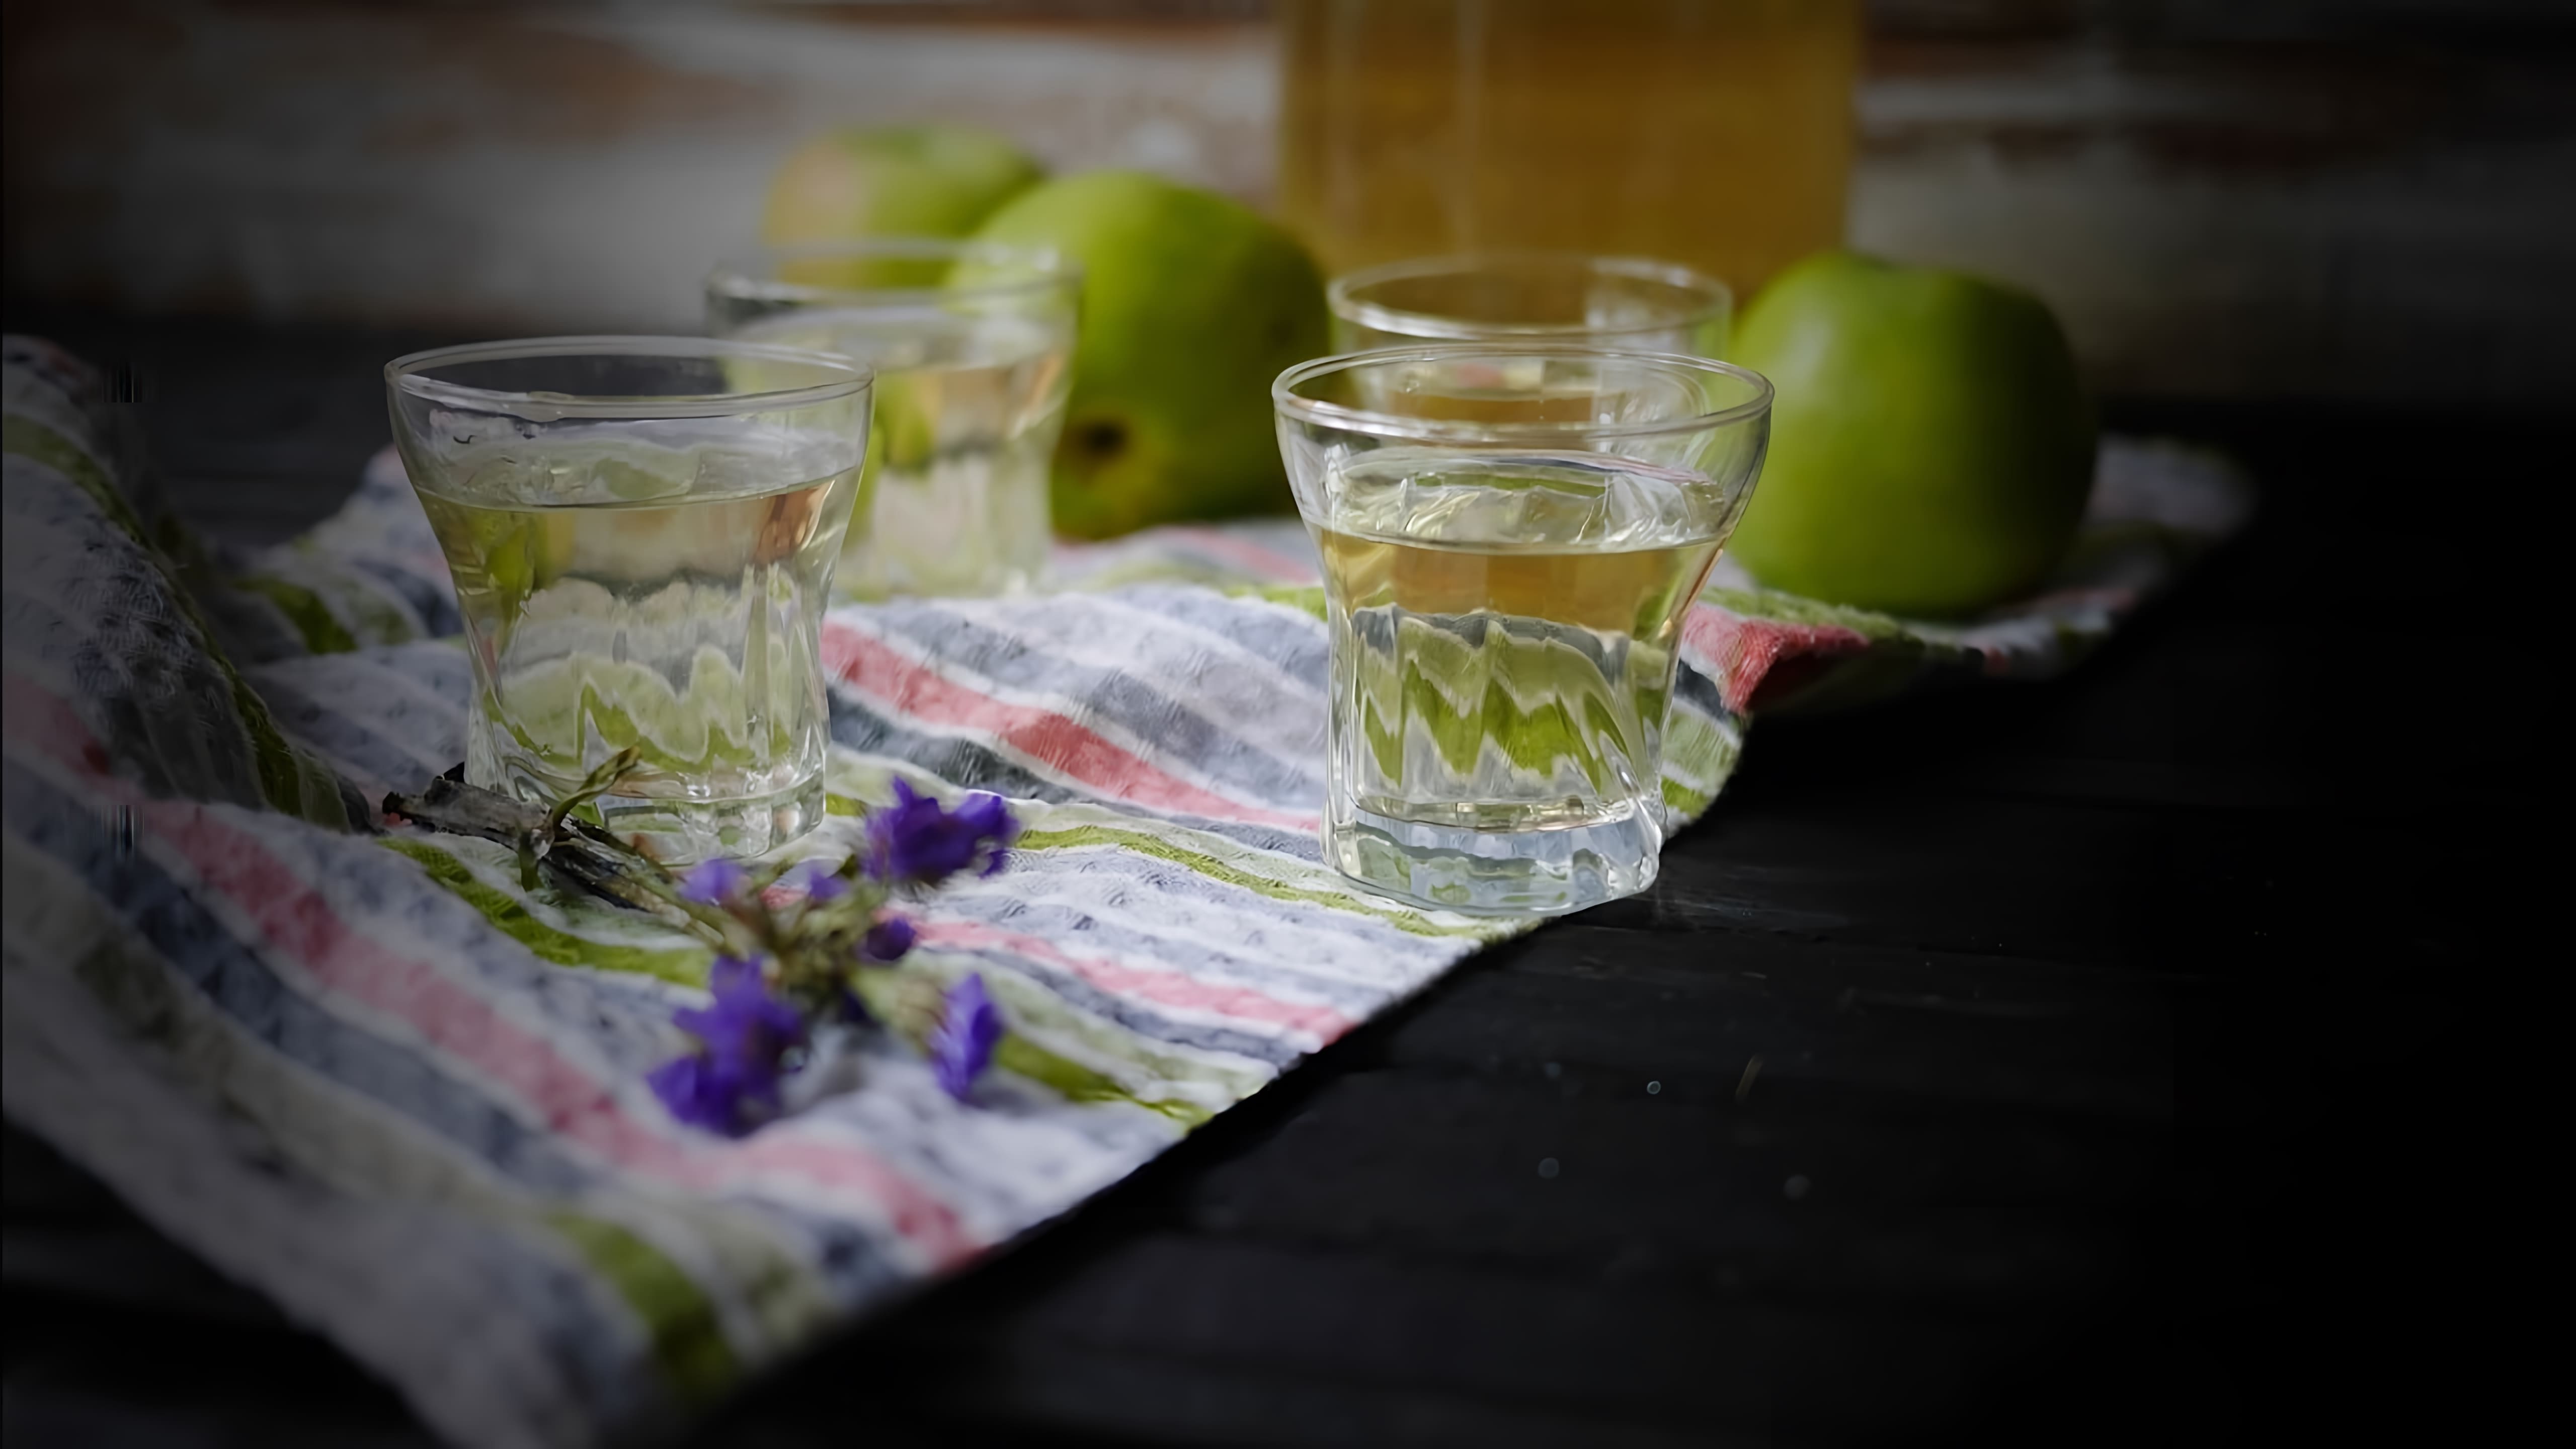 В этом видео демонстрируется процесс приготовления домашней настойки из яблок на водке или спирте